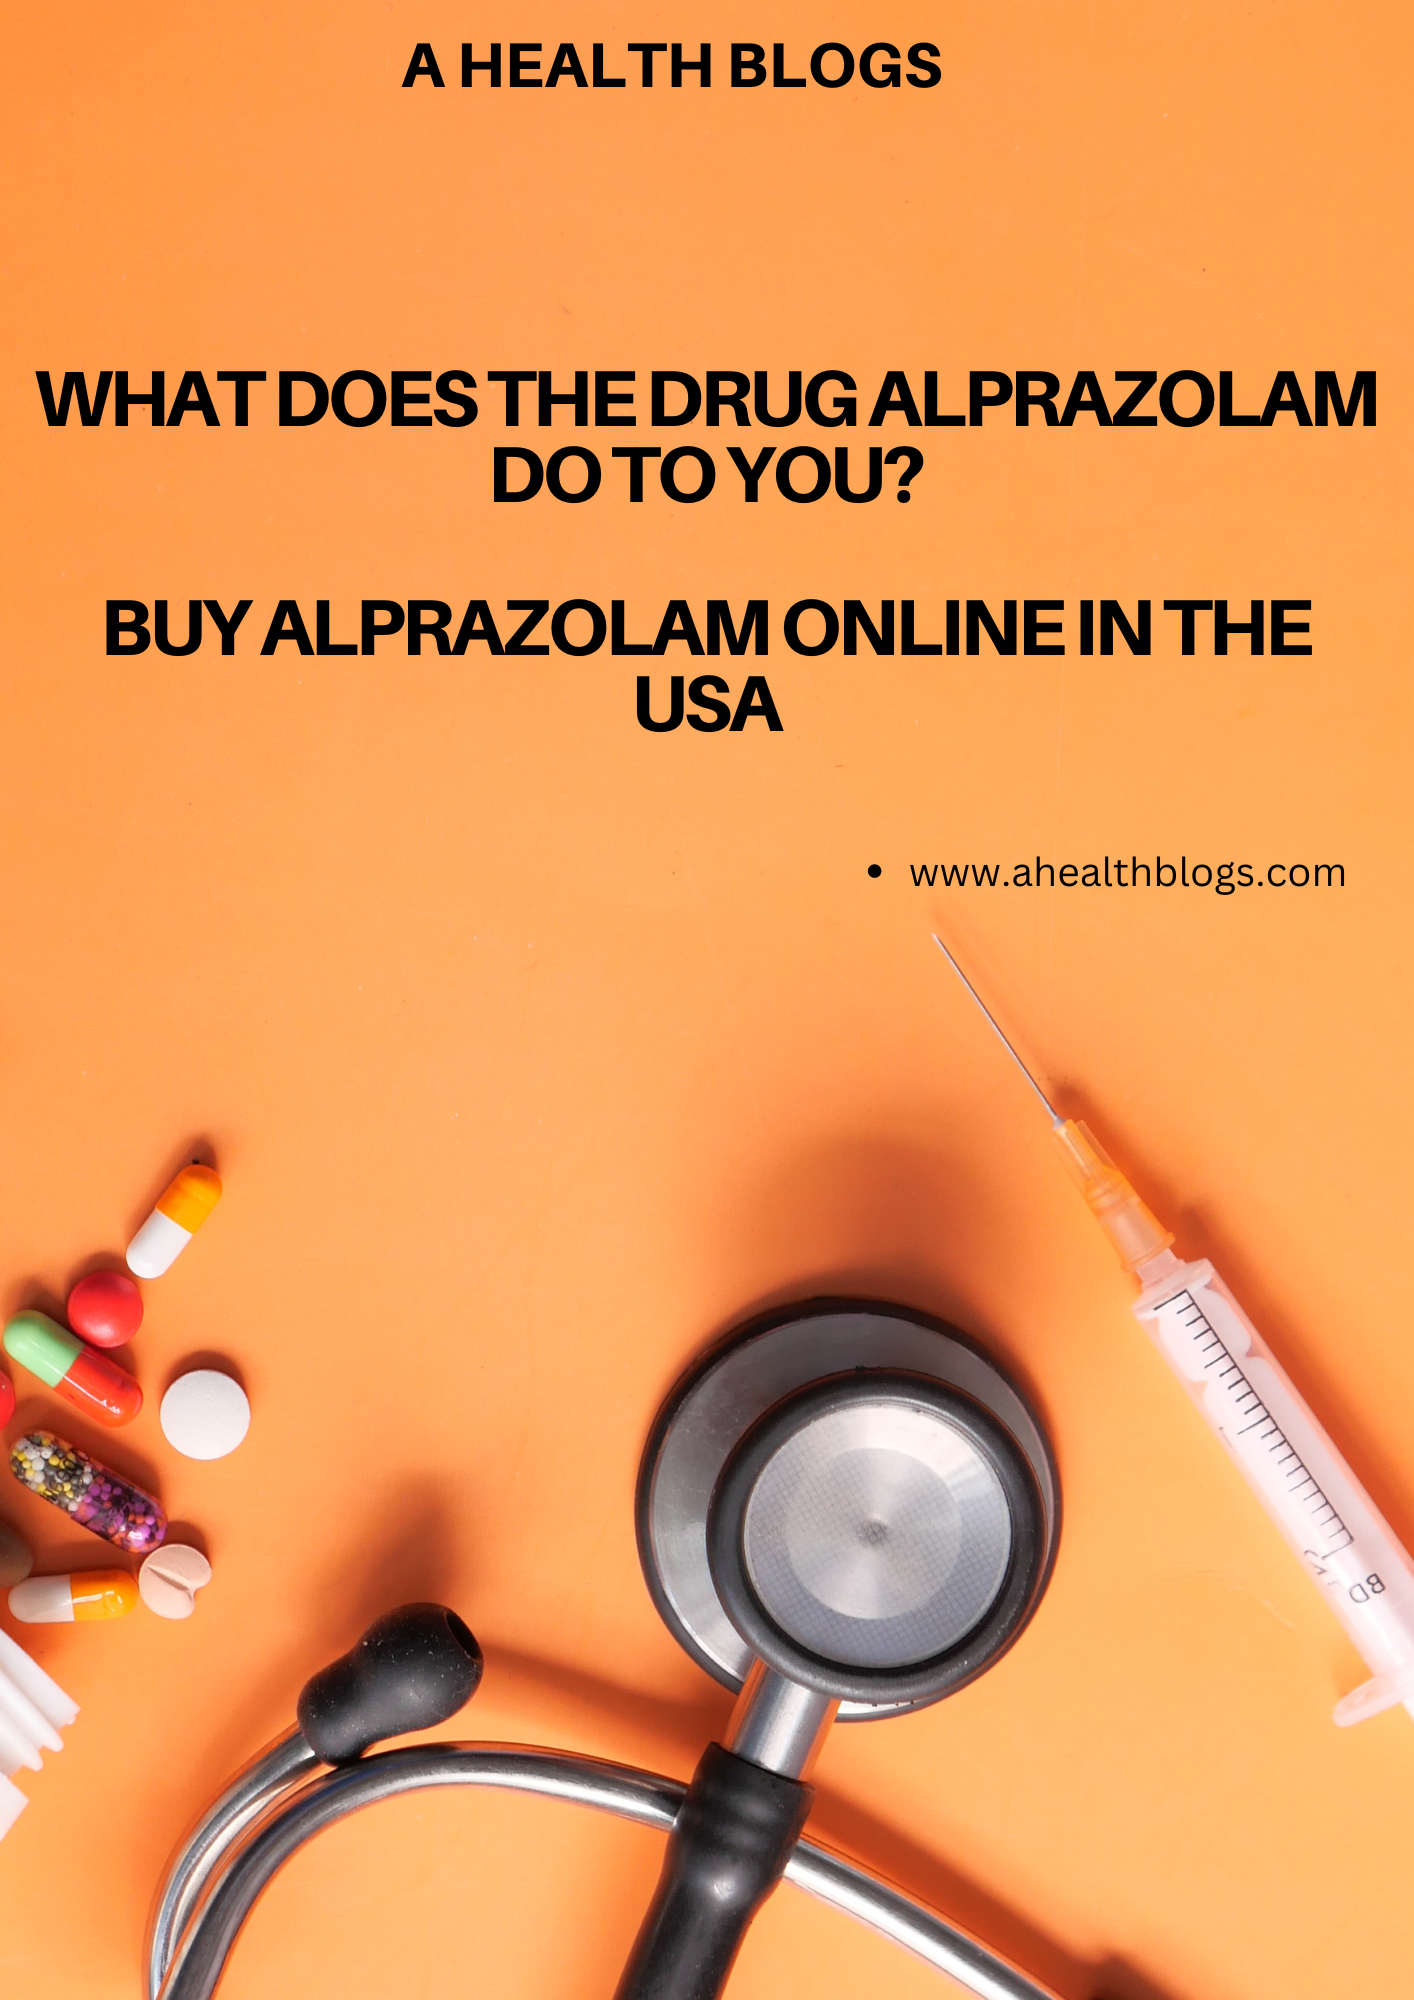 Buy Alprazolam Online in the USA